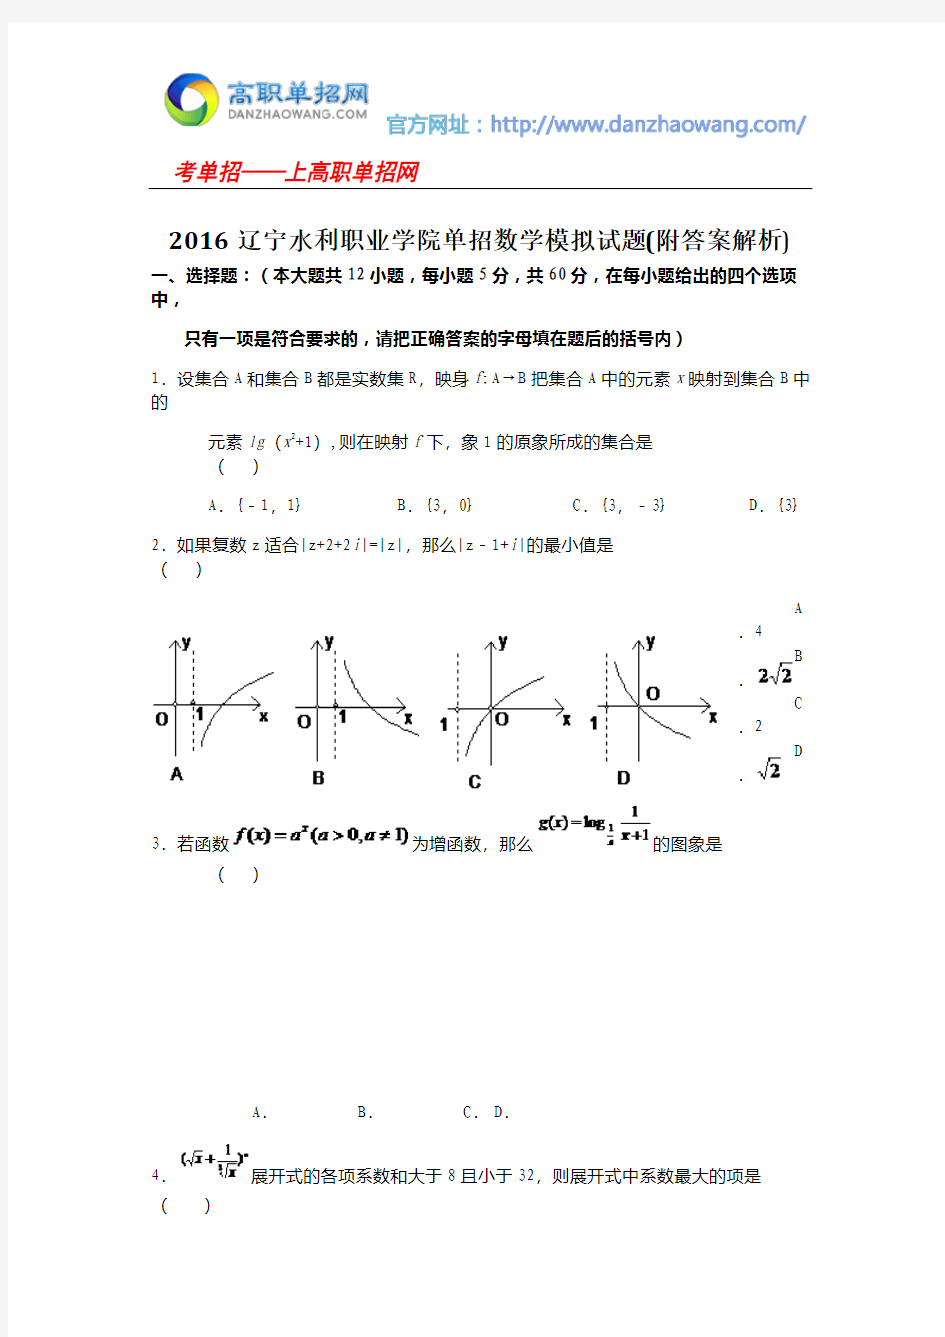 2016辽宁水利职业学院单招数学模拟试题(附答案解析)